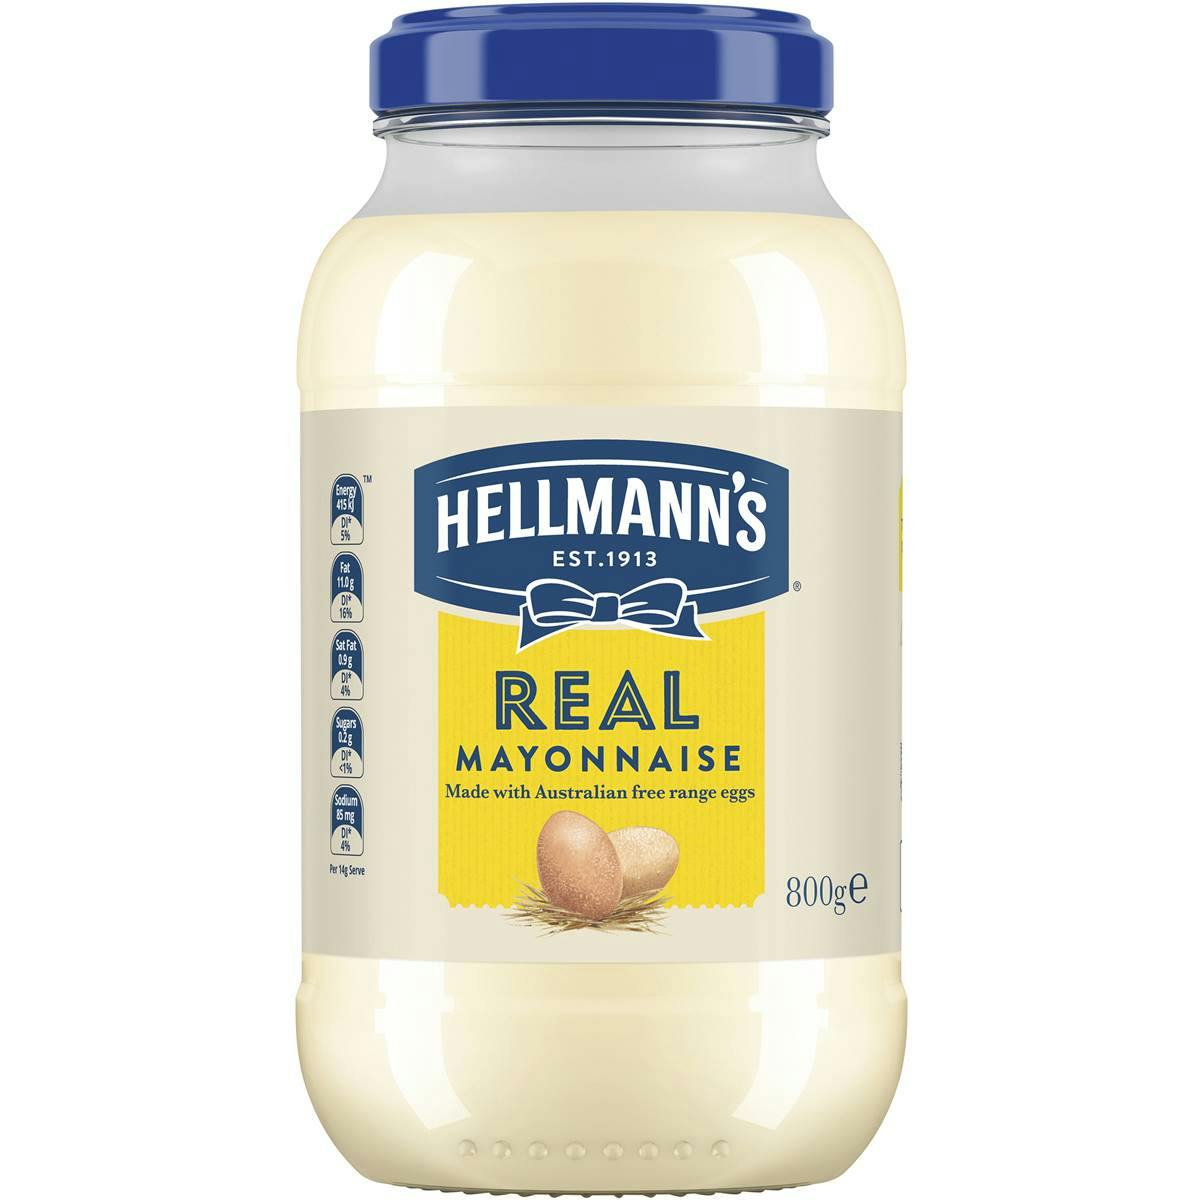 Hellmann's Real Mayonnaise Jar